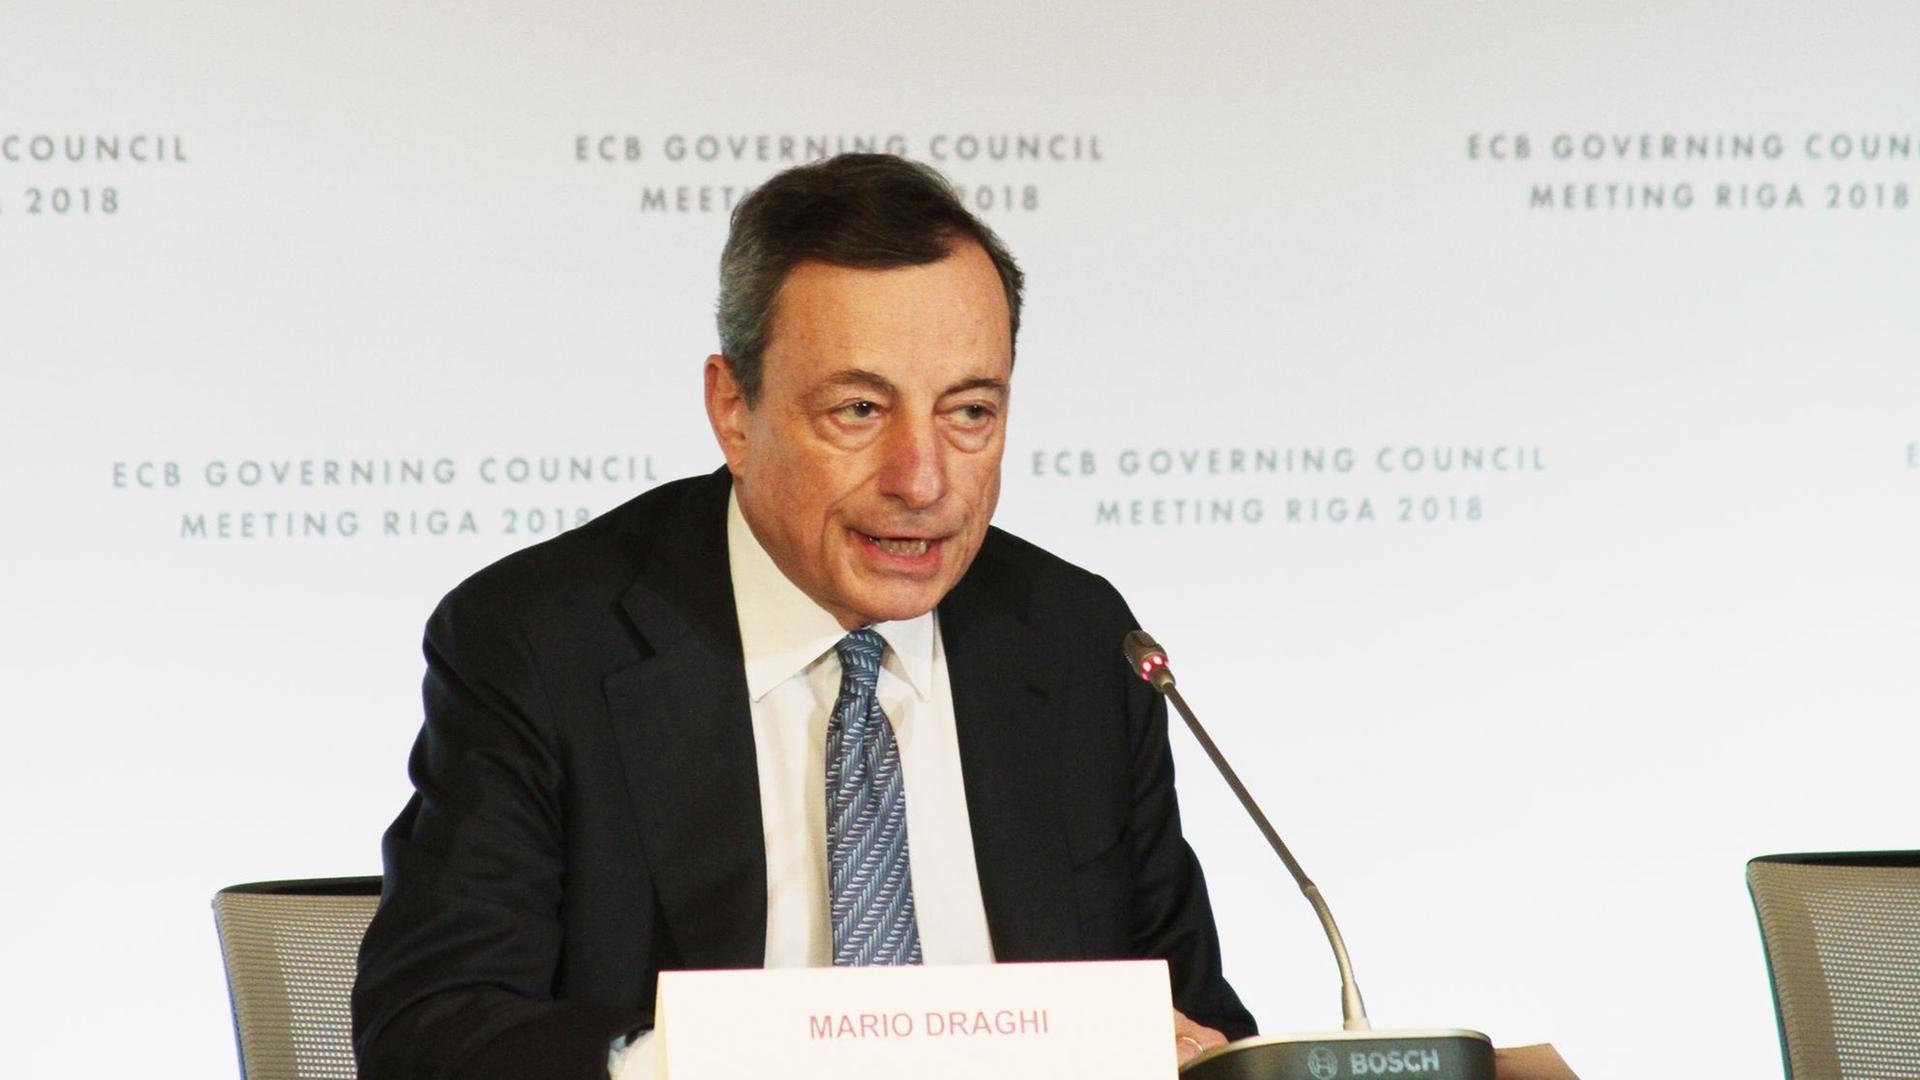 Lettland, Riga: Mario Draghi, Präsident der Europäischen Zentralbank (EZB), spricht auf der Pressekonferenz nach der EZB-Ratsitzung in Riga